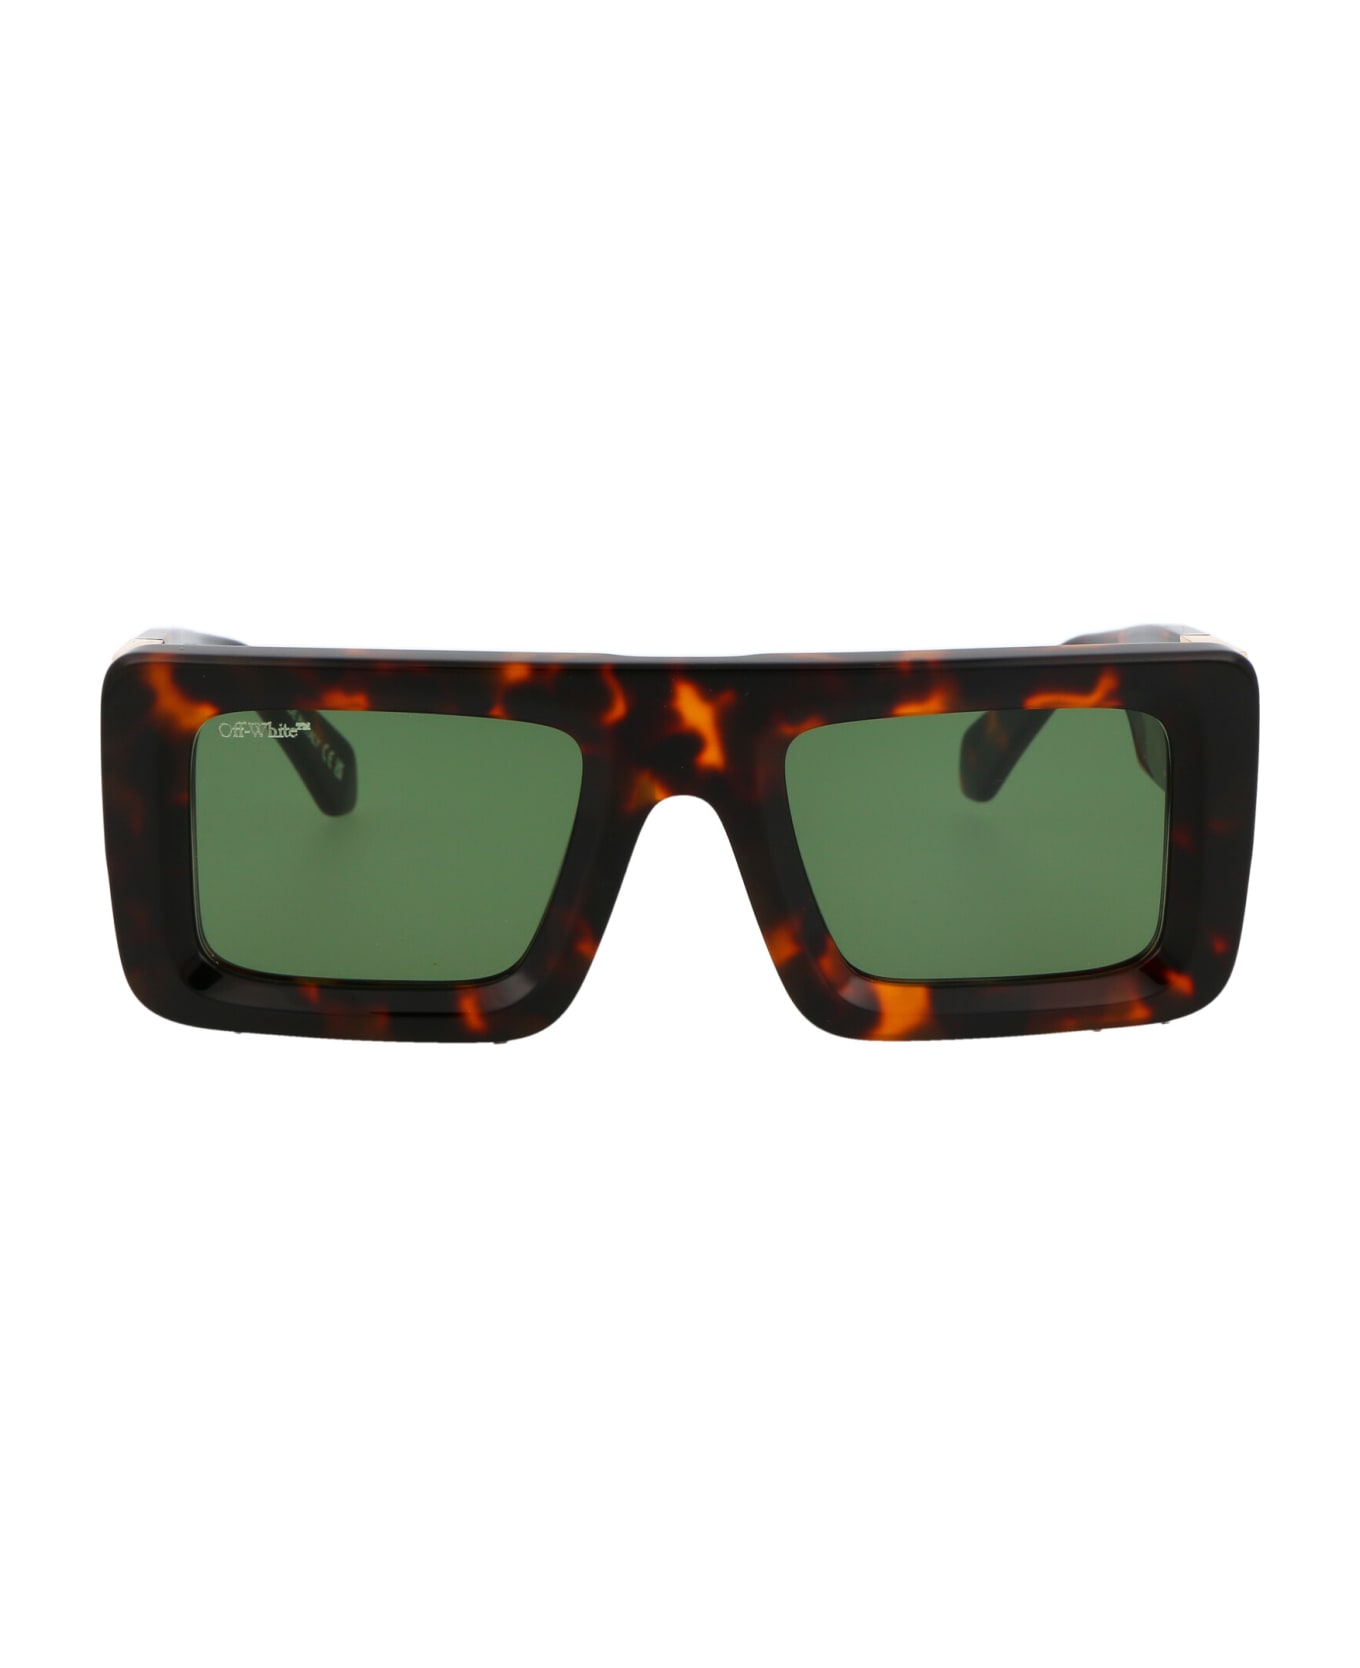 Off-White Leonardo Sunglasses - 6055 HAVANA GREEN